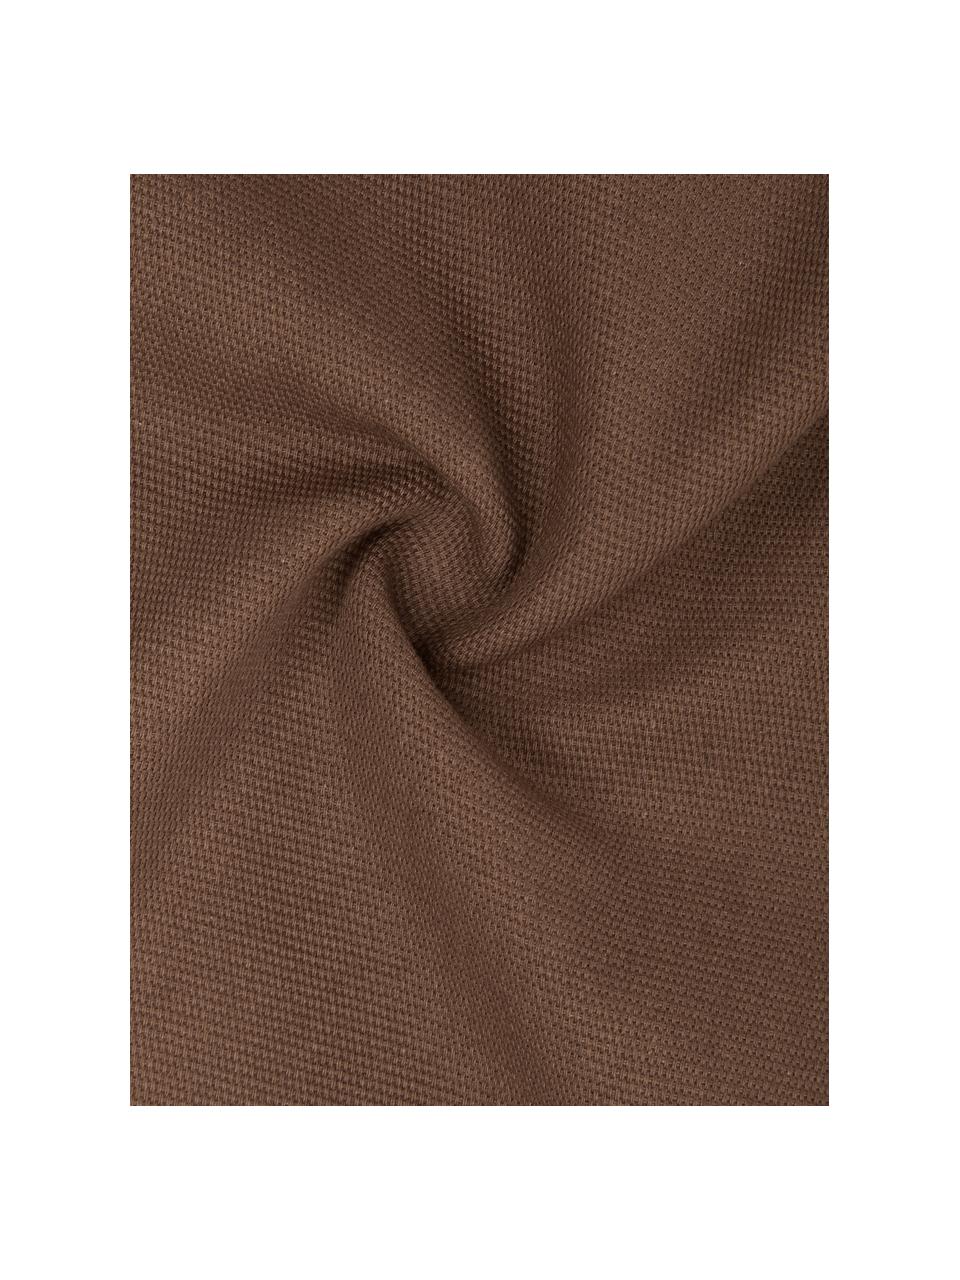 Katoenen kussenhoes Mads in bruin, 100% katoen, Bruin, B 40 x L 40 cm